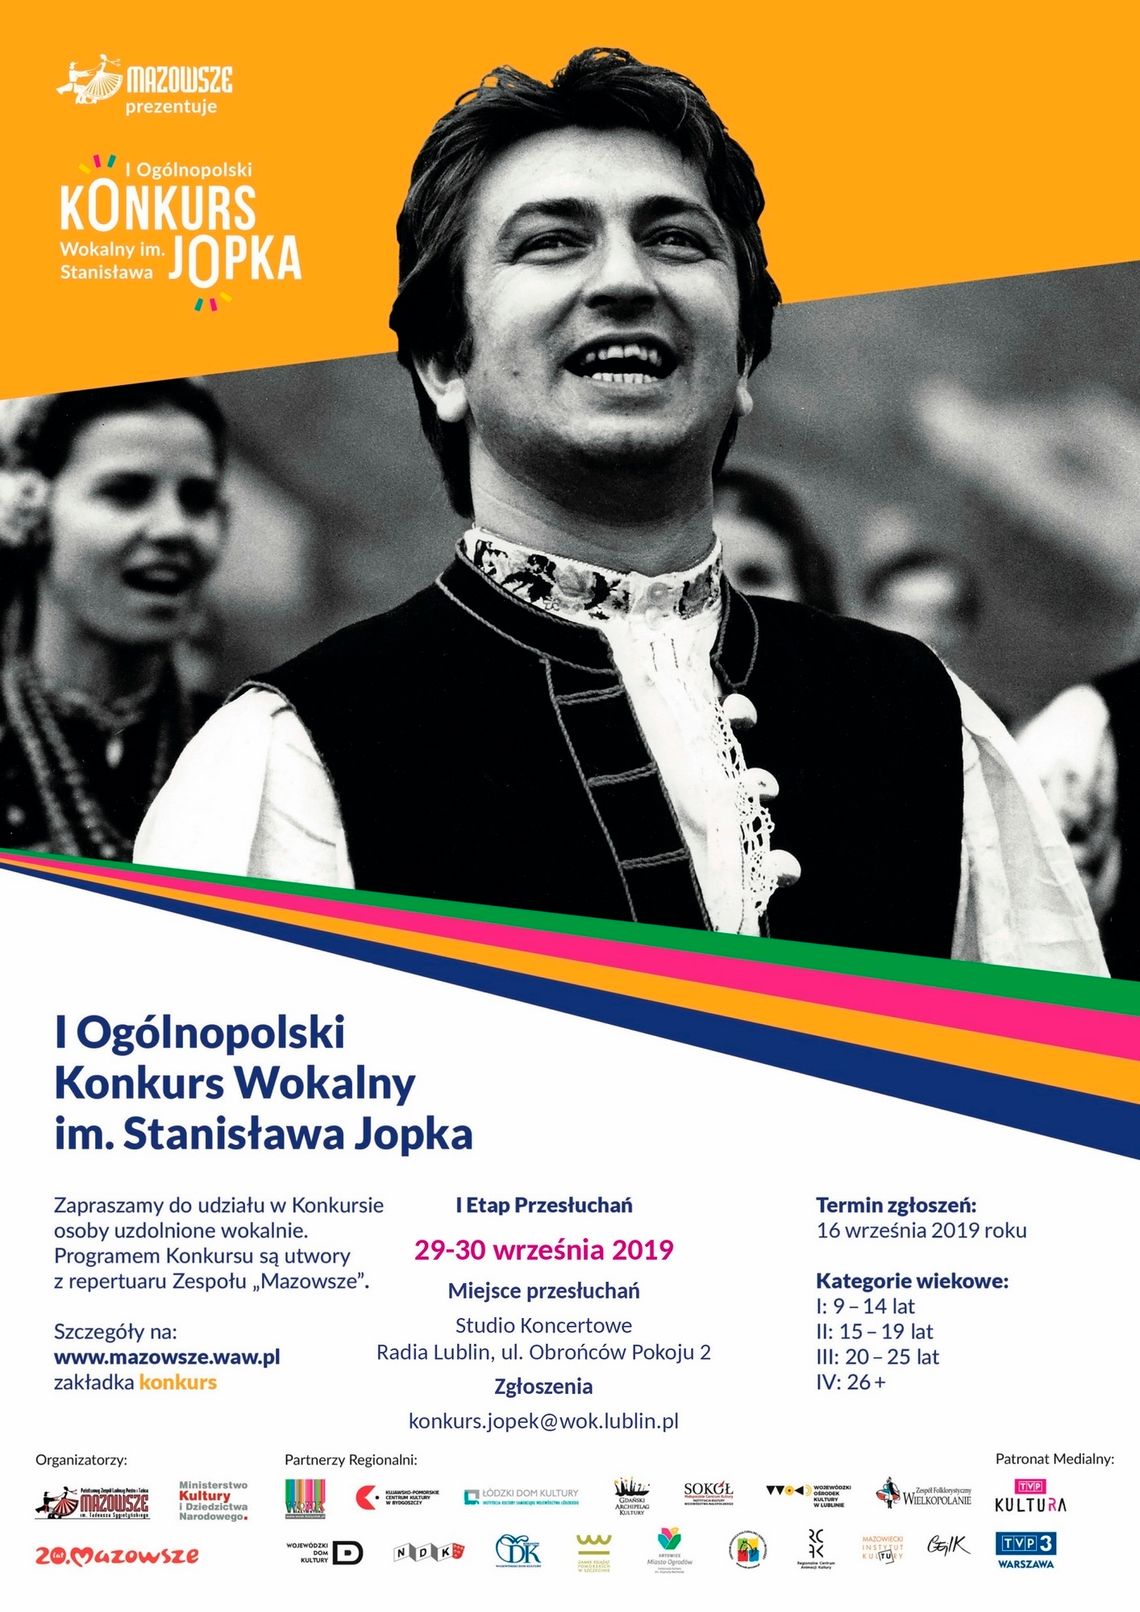 I Ogólnopolski Konkurs Wokalny im. Stanisława Jopka /29-30 września 2019